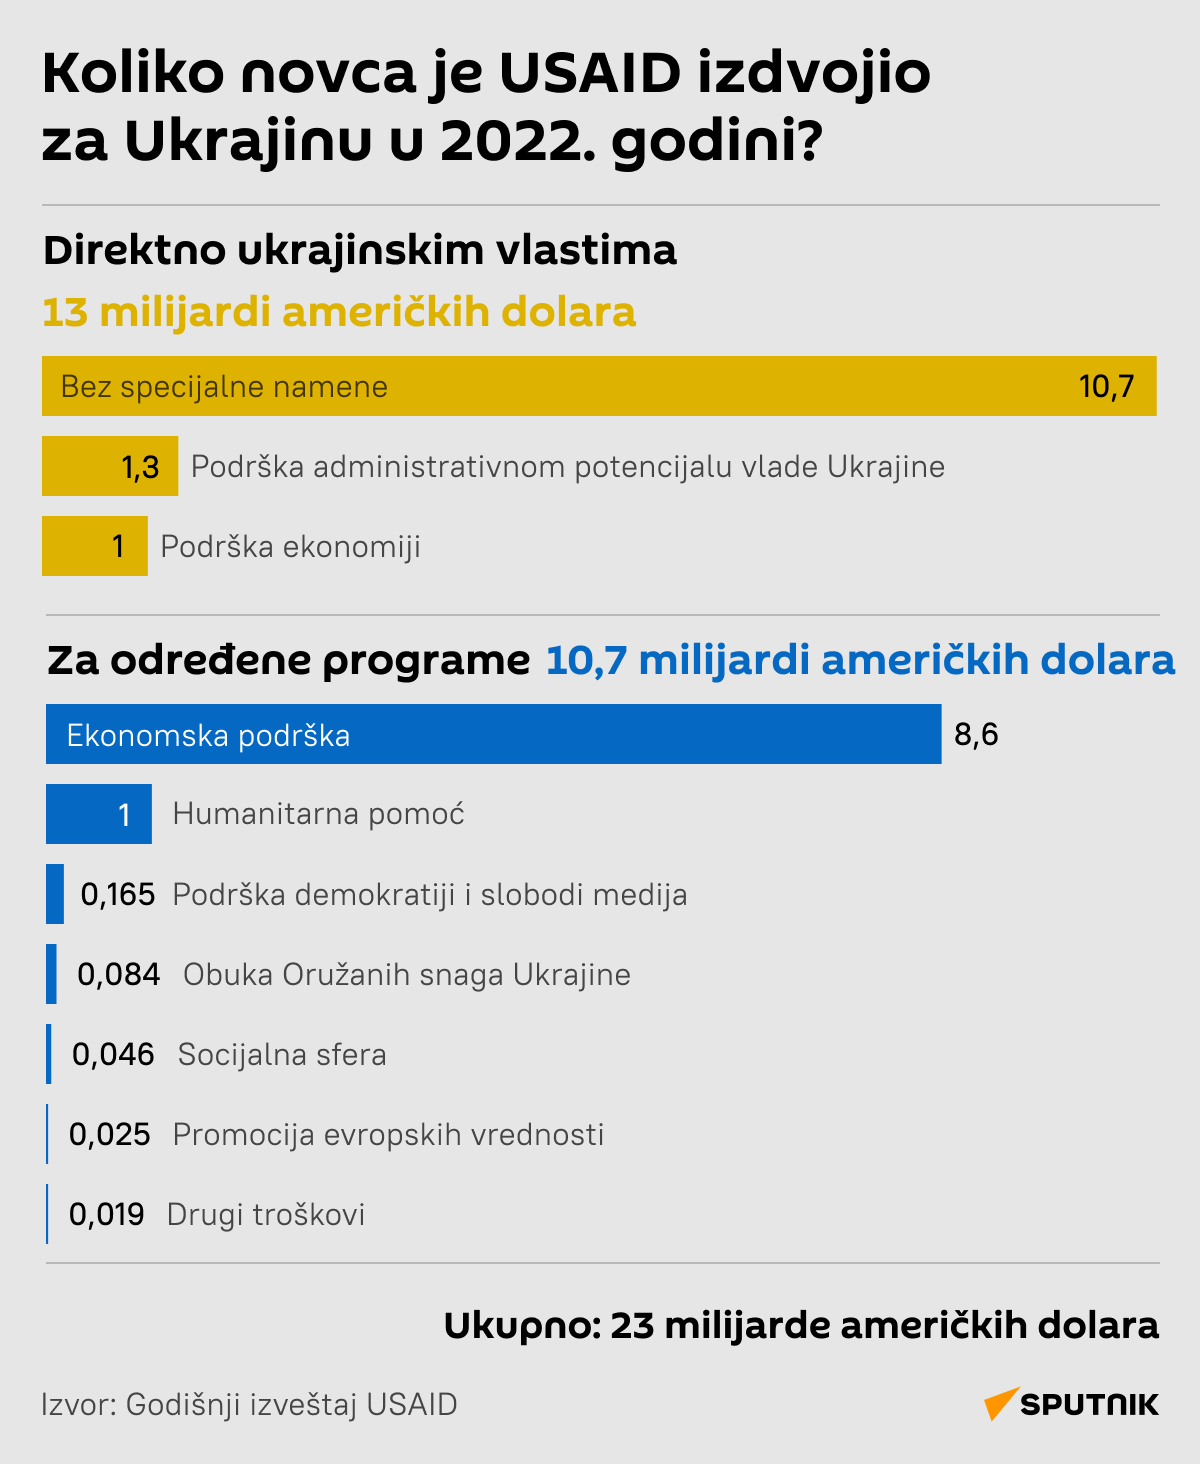 Infografika  Koliko novca je USAID izdvojio za Ukrajinu  LATINICA desk - Sputnik Srbija